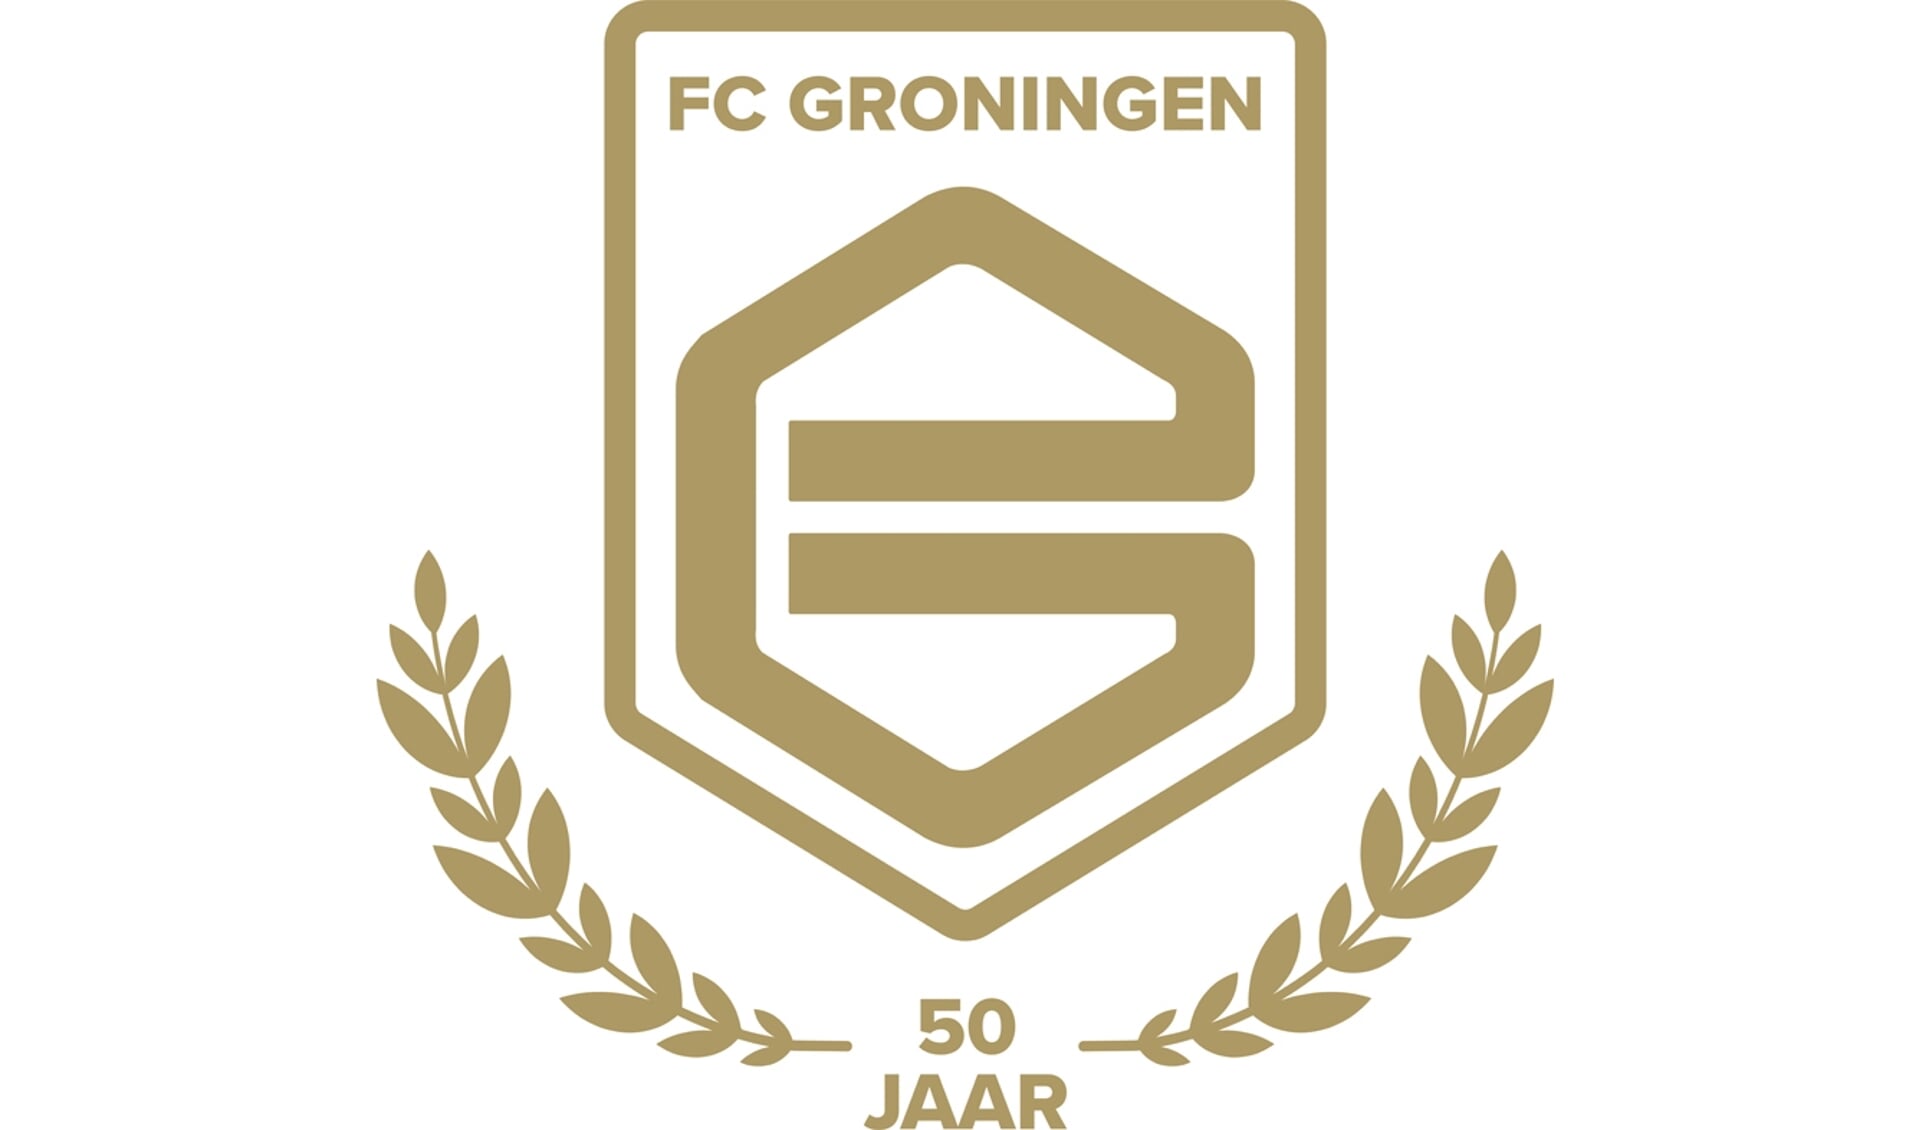 Het speciale jubileumlogo dat FC Groningen het komende seizoen zal gebruiken.